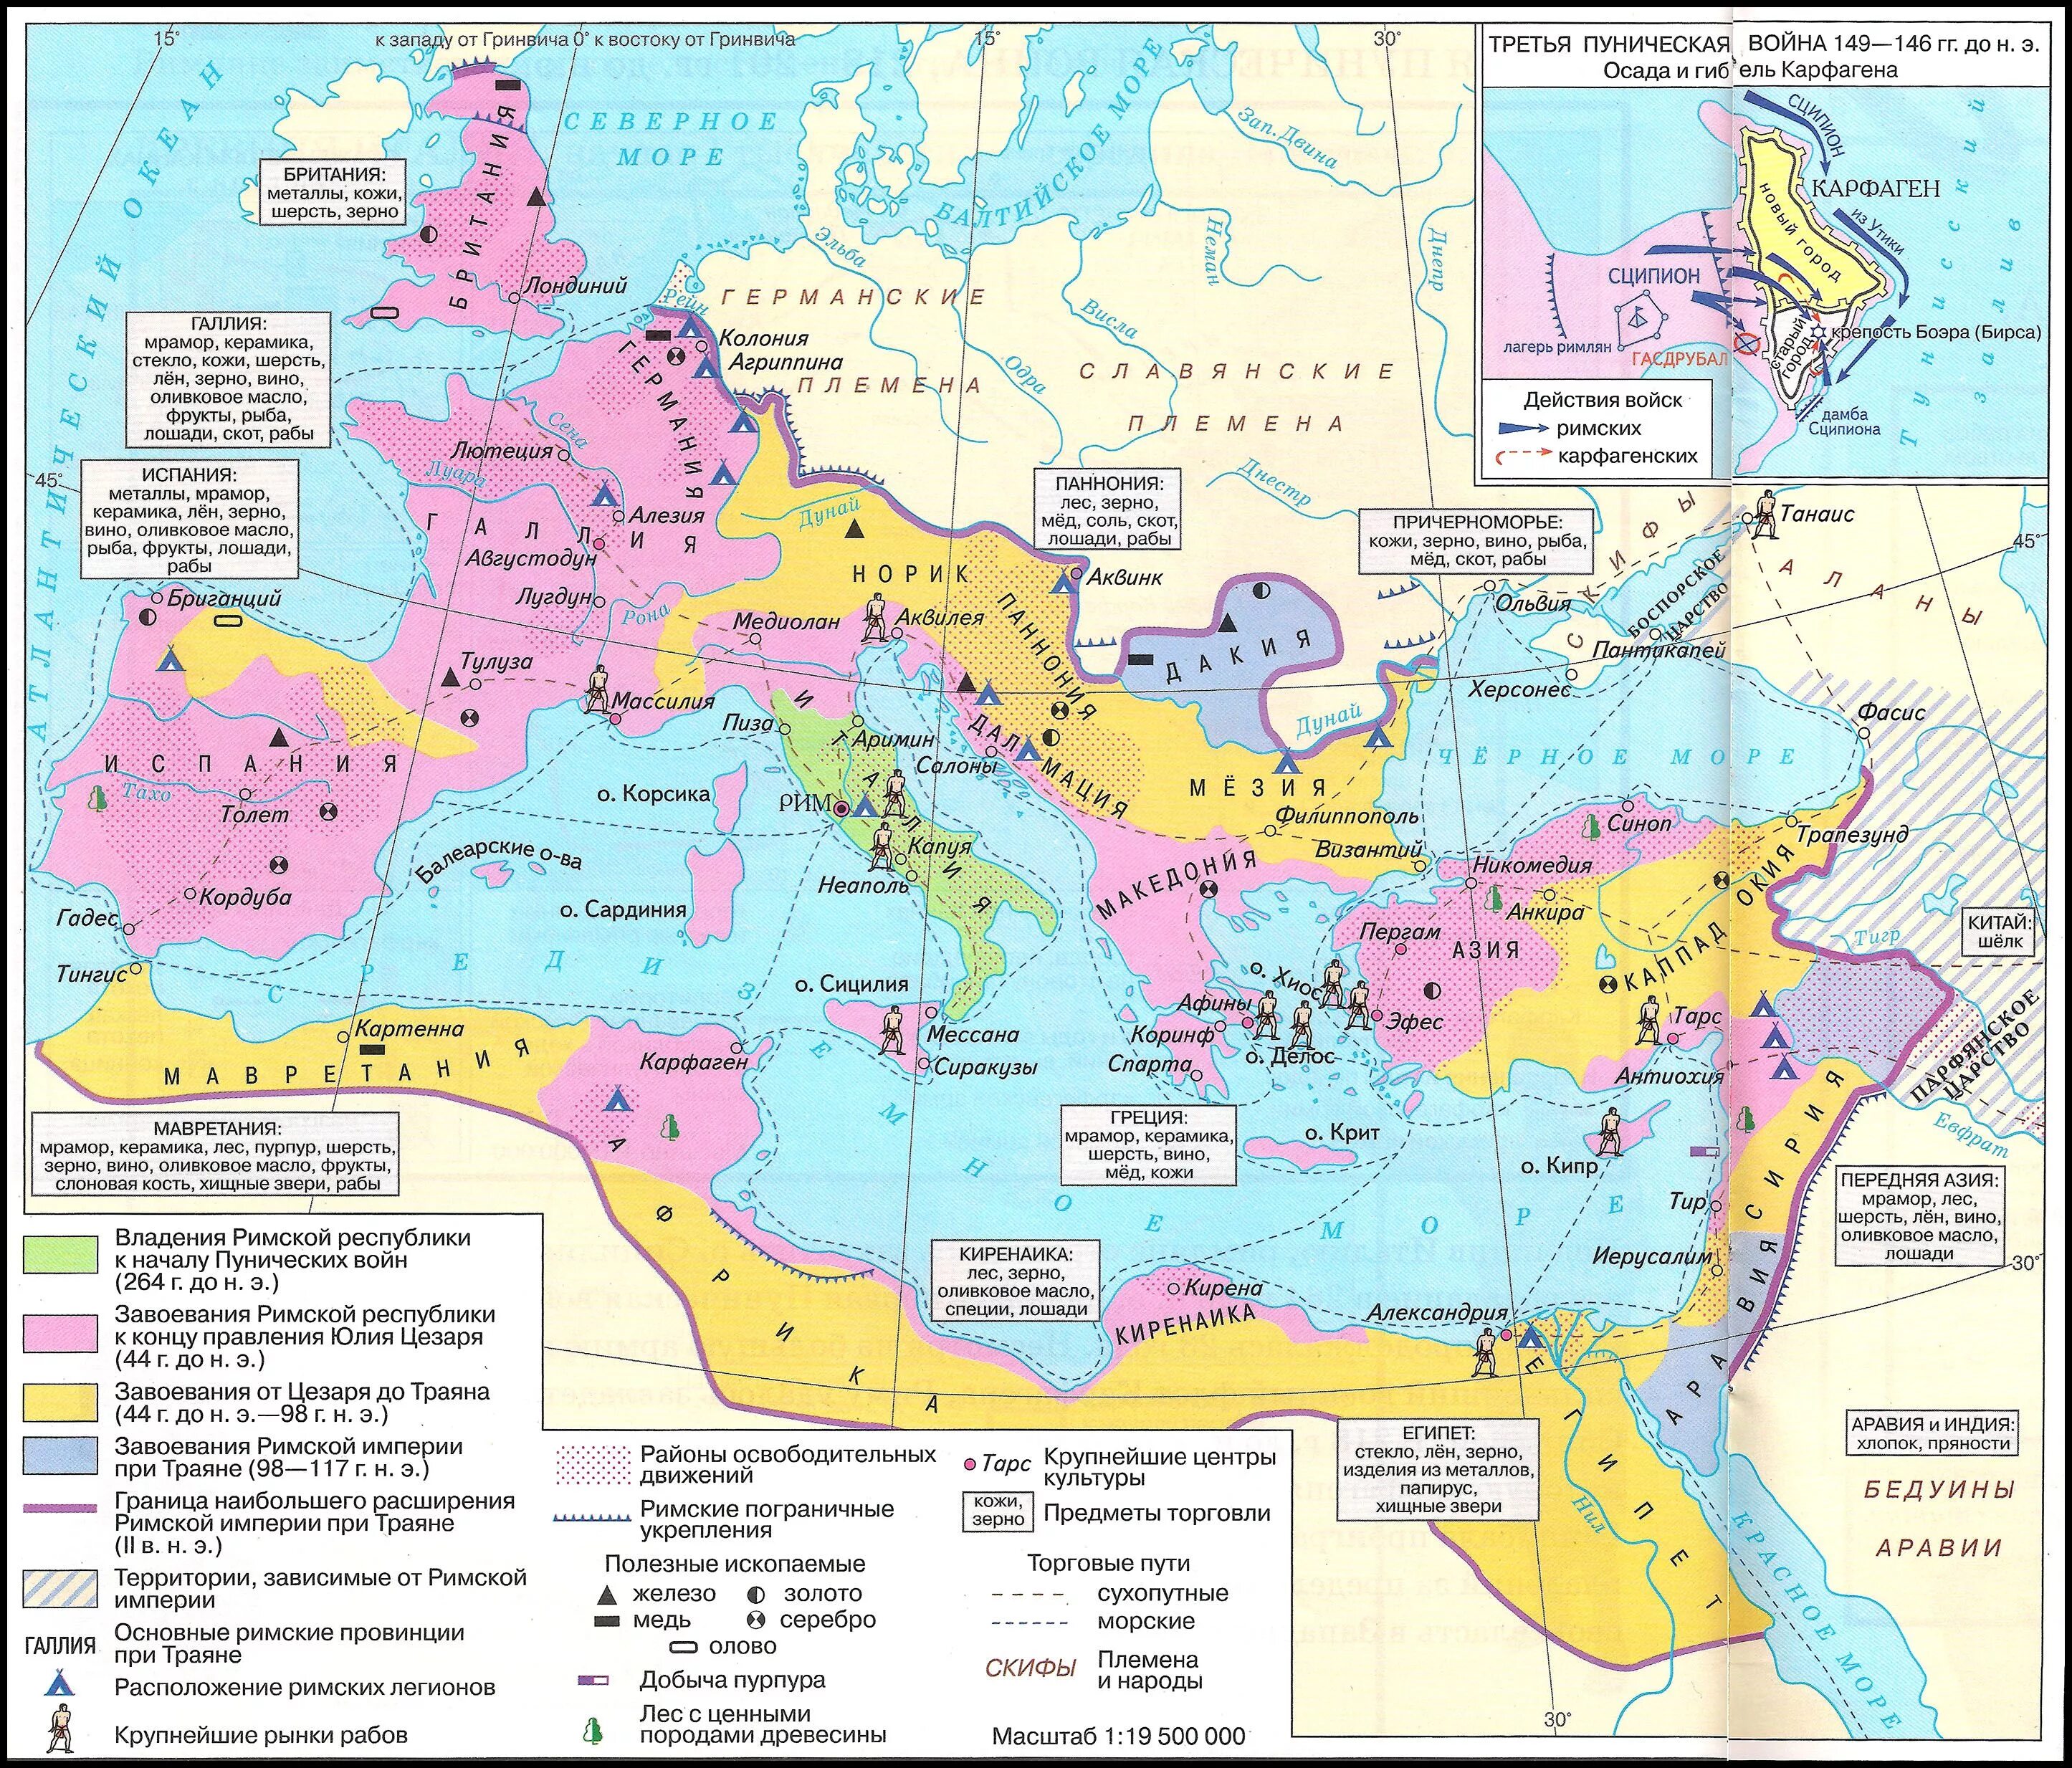 2 3 век нашей эры. Римское государство 3 в до н э 2 в до н э. Карта римское государство в 3 веке до н.э 2 веке н.э. Карта Римского государства 3 в до н э 2 в н э. Римское государство 3в до н.э.